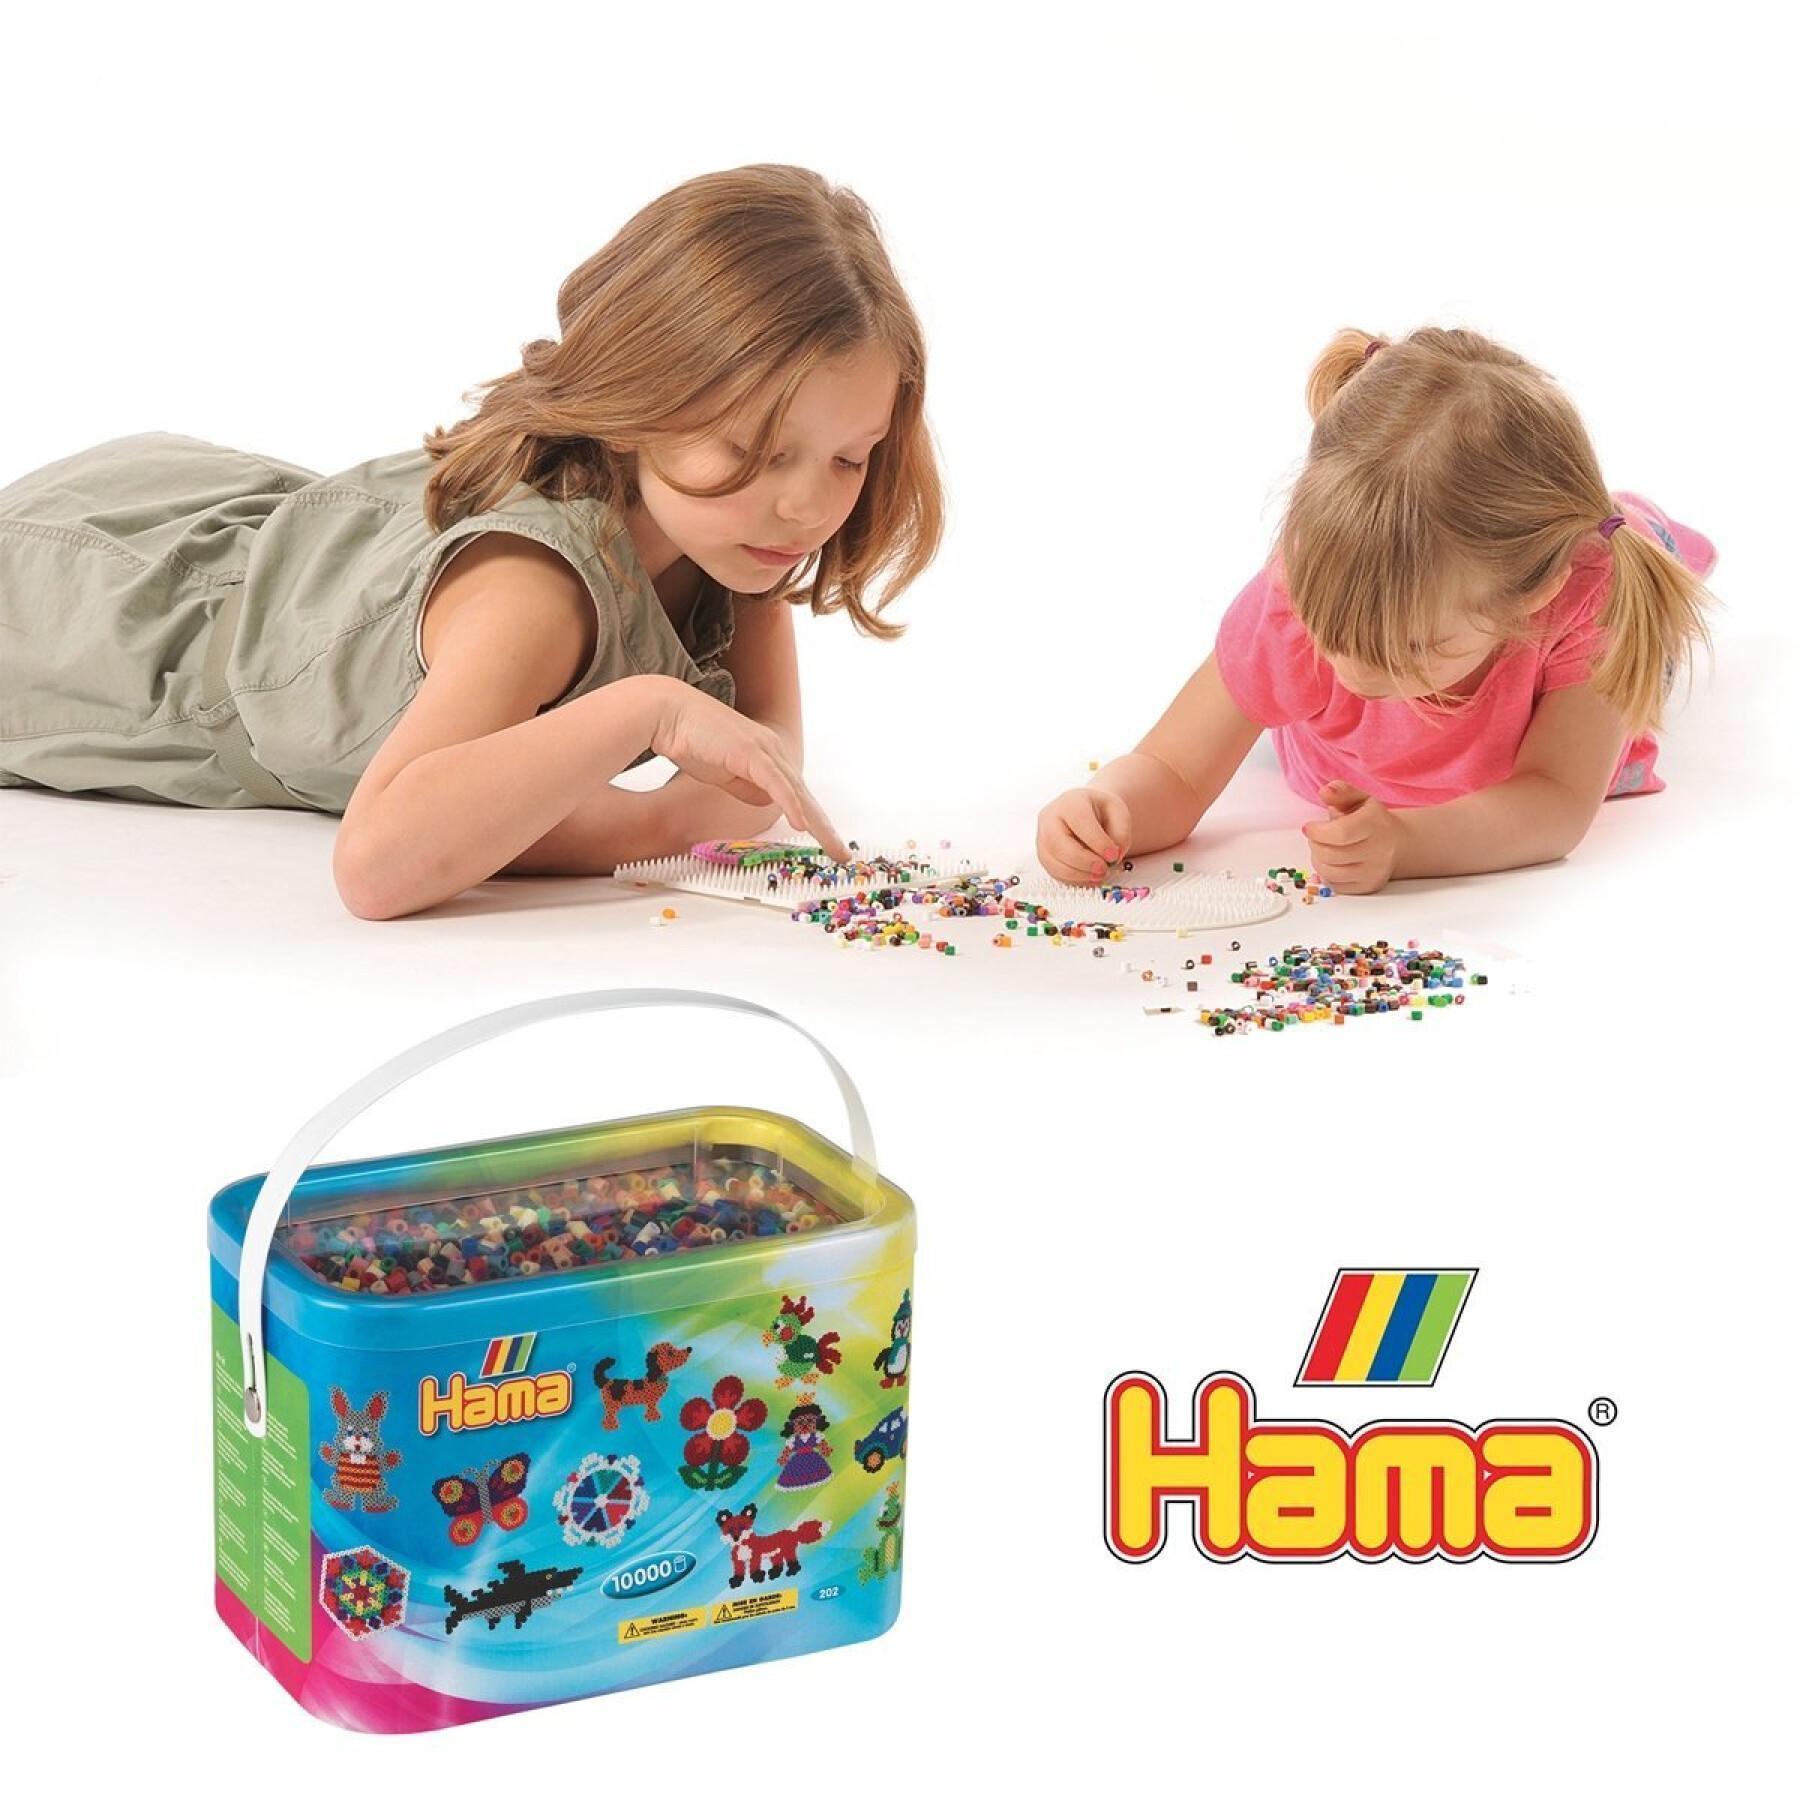 10000 hama beads 22 colores Jbm Sarl Baril